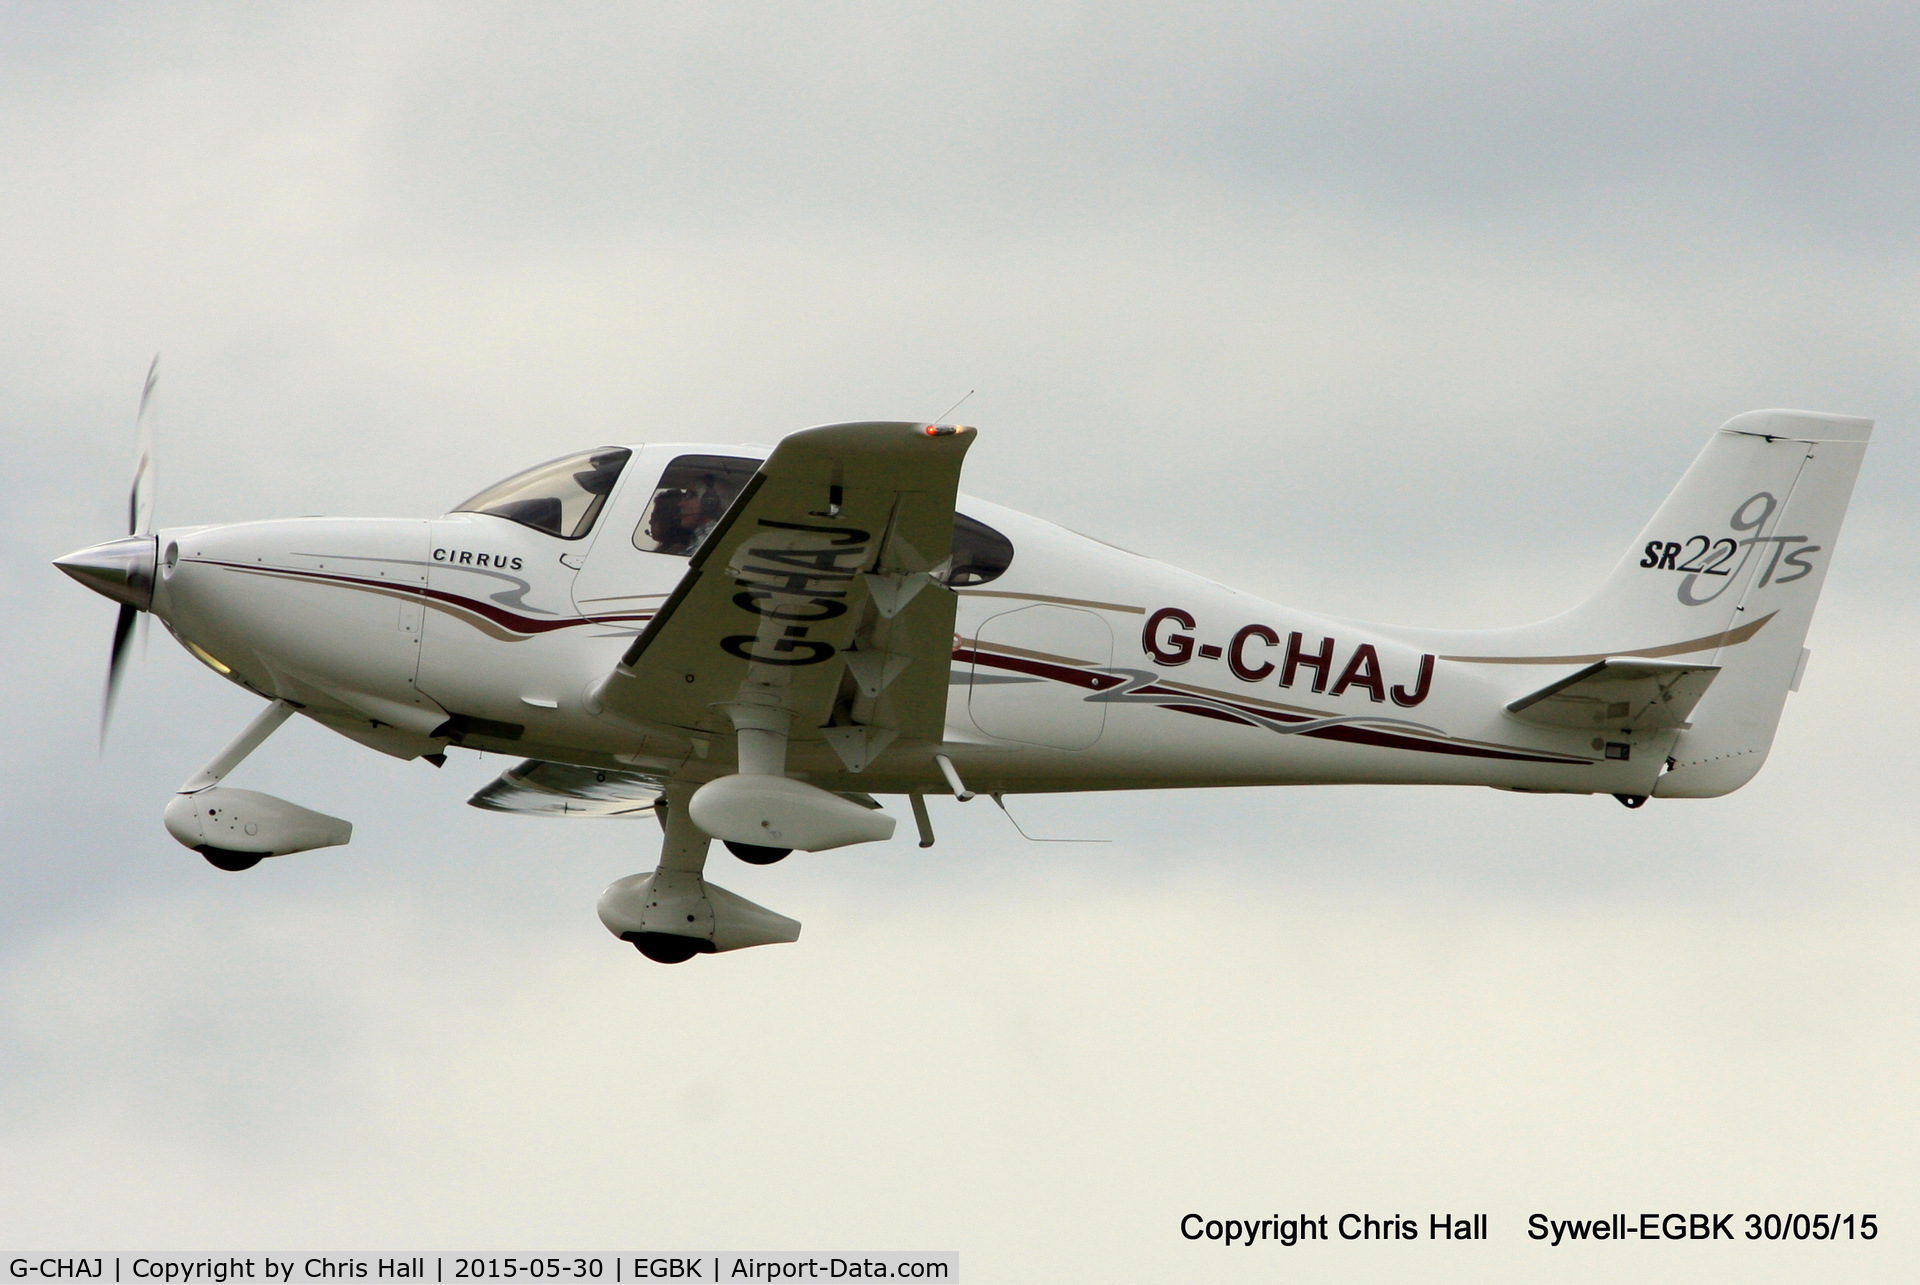 G-CHAJ, 2004 Cirrus SR22 GTS C/N 1057, at Aeroexpo 2015